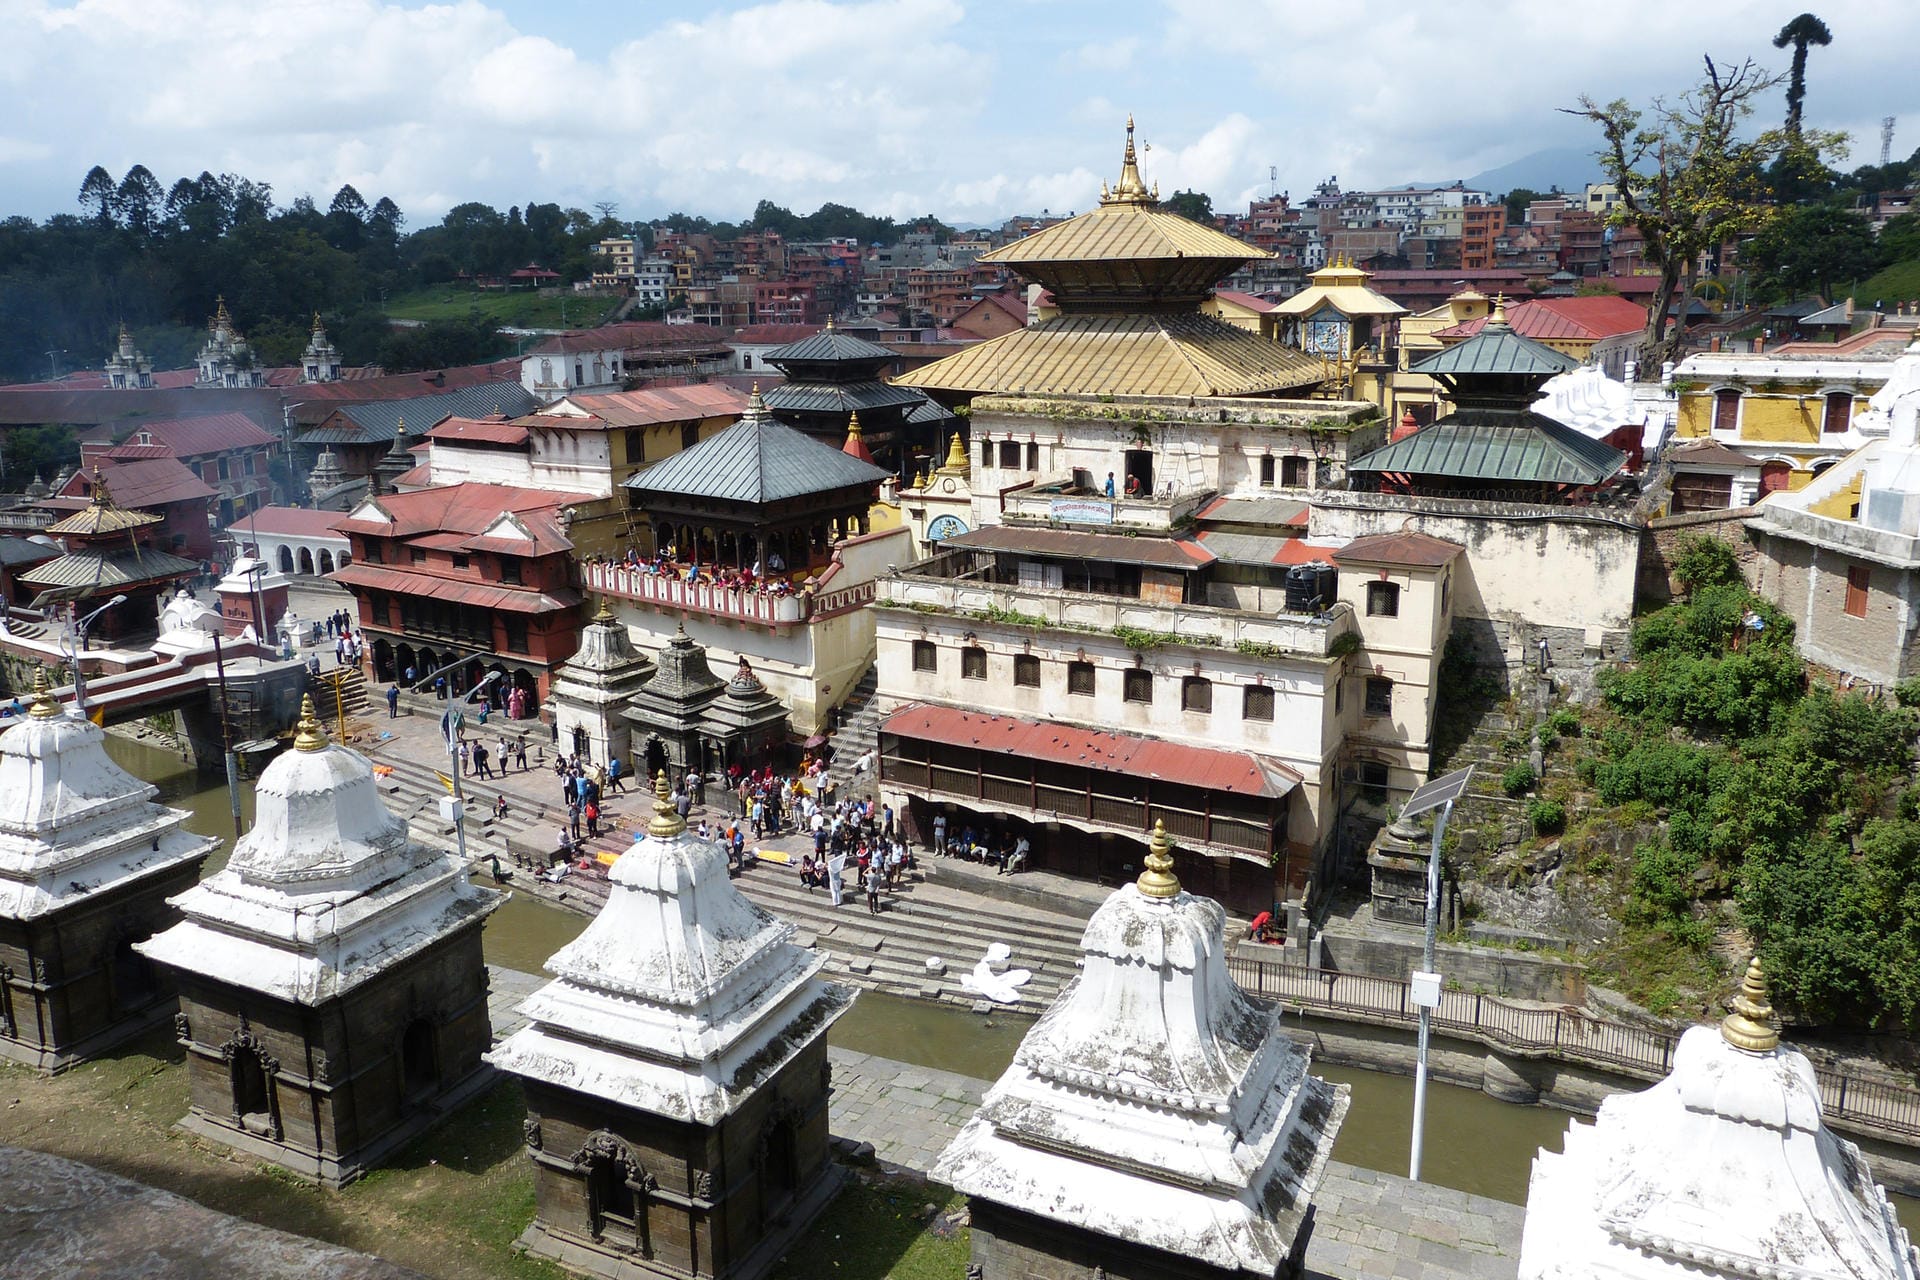 Als eine Metropole in Asien ist die nepalesische Hauptstadt Kathmandu unter den Empfehlungen des "Lonely Planet" für 2019.